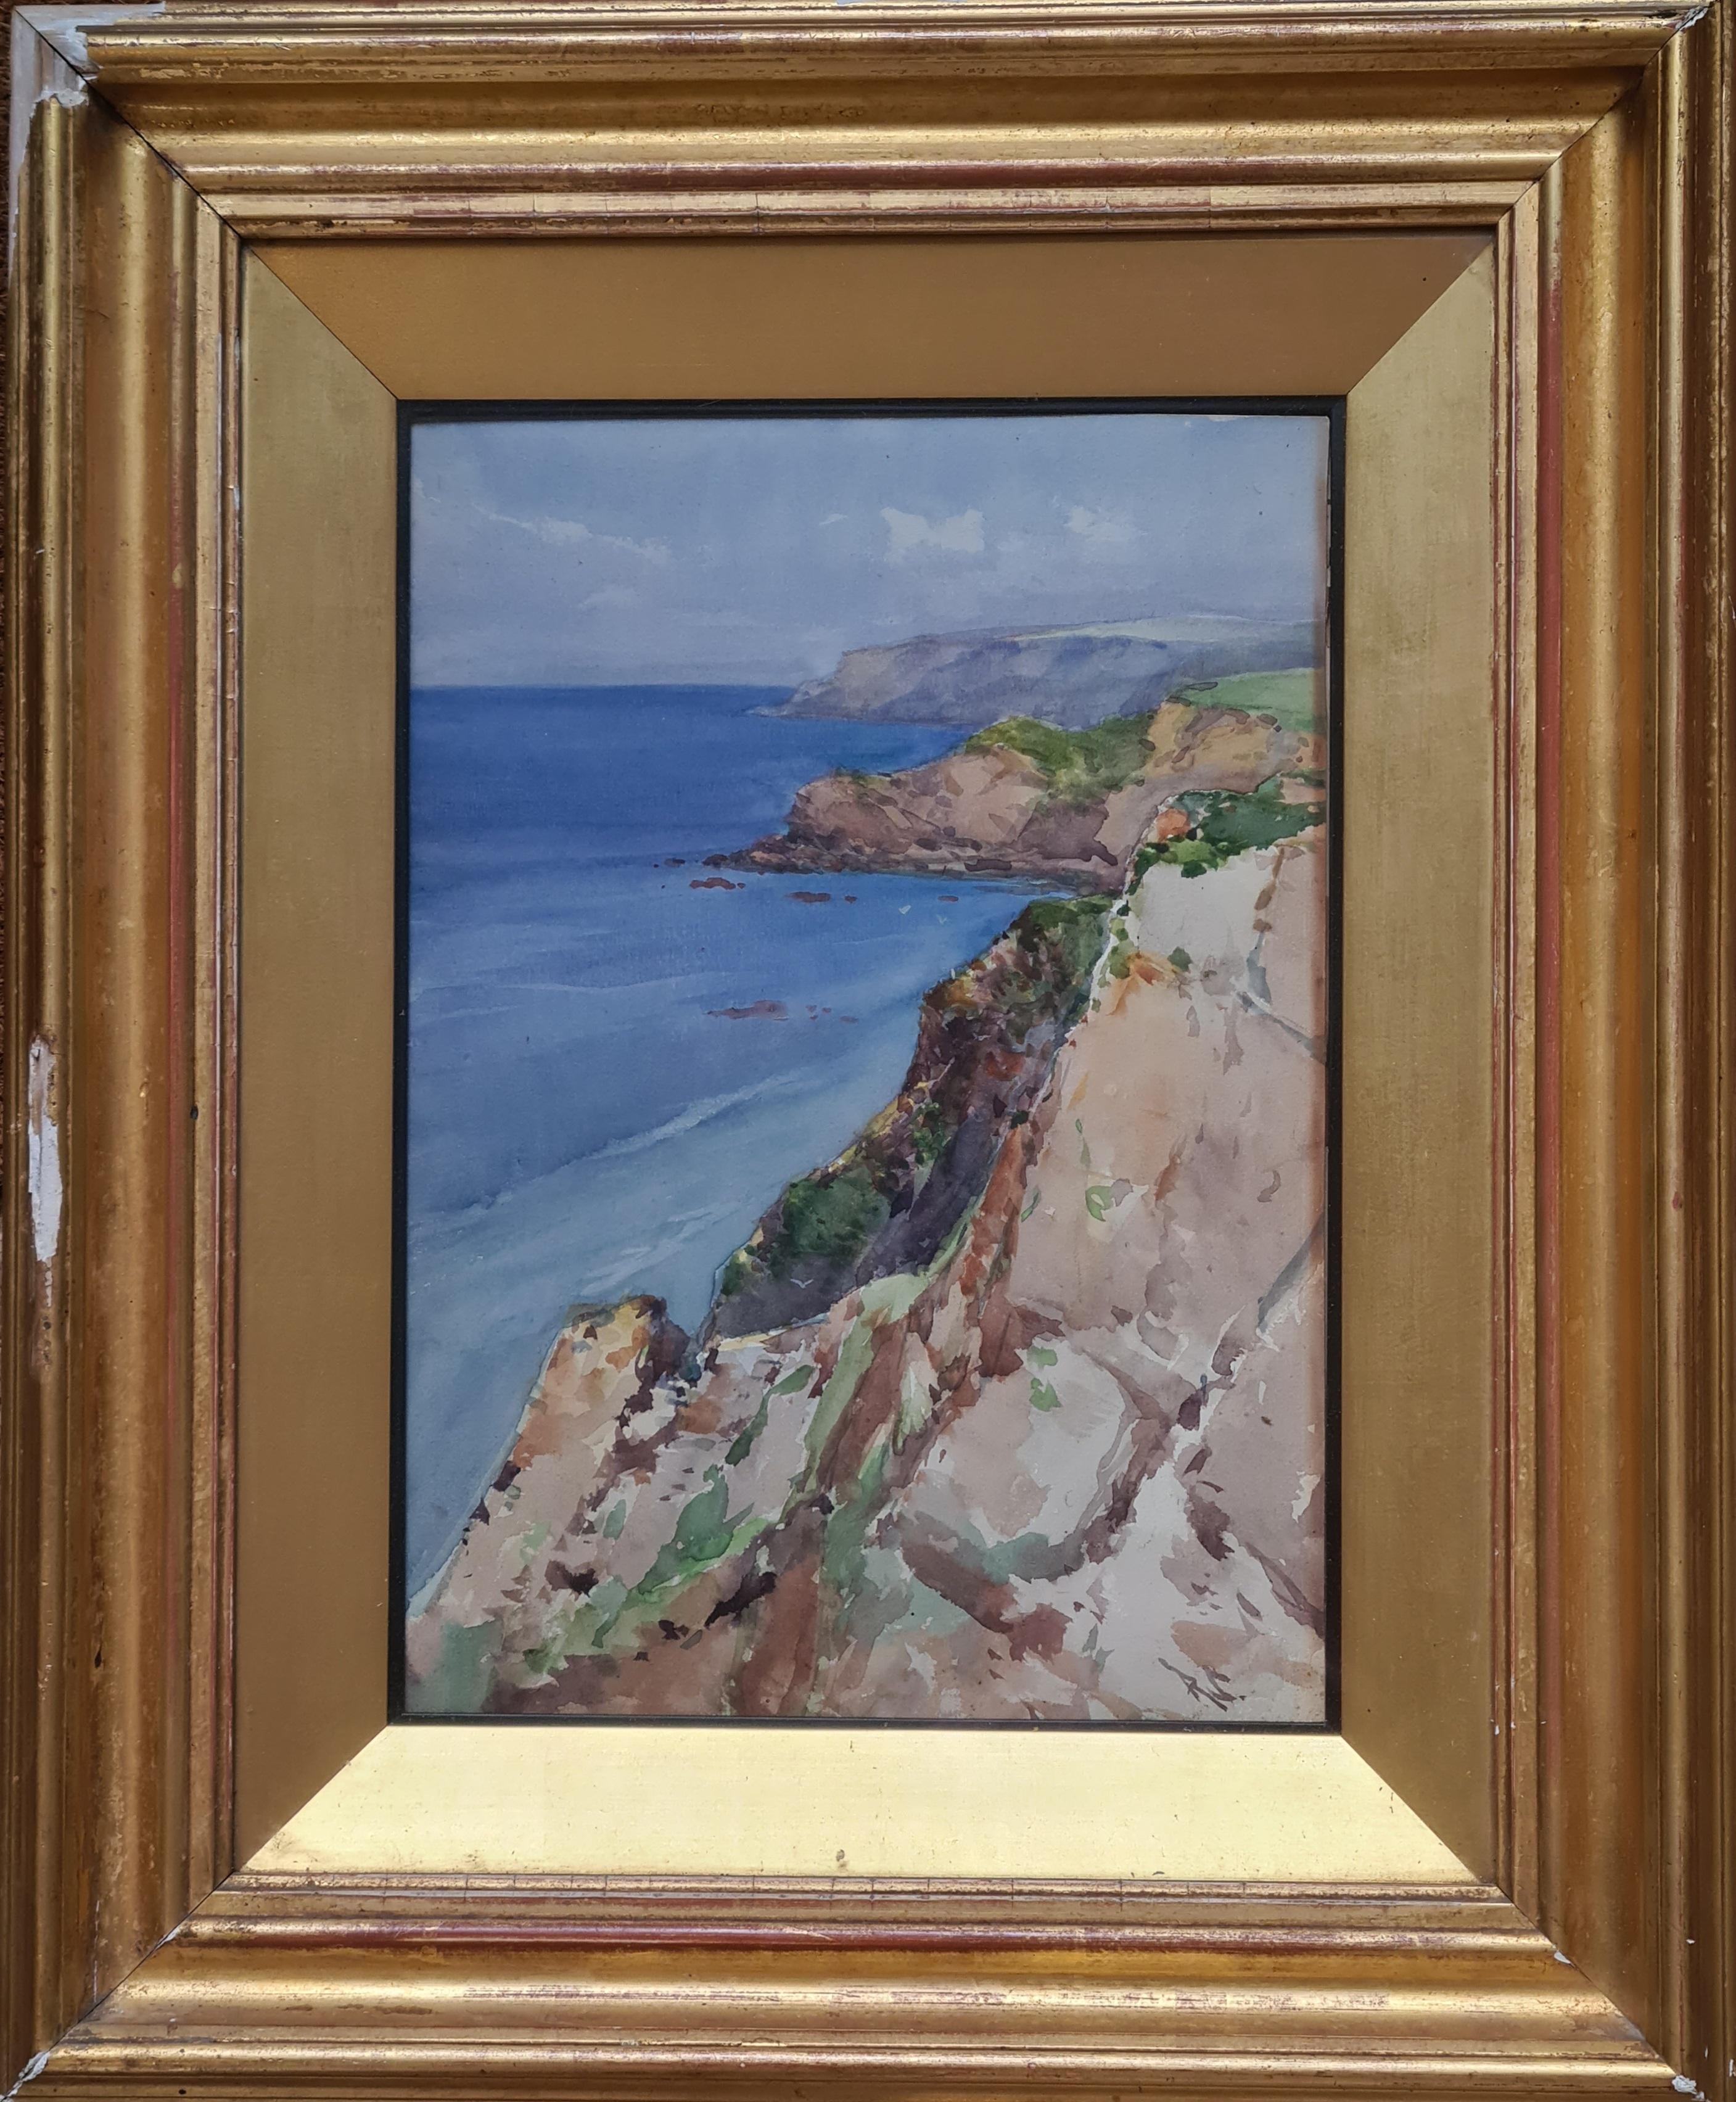 Die Juraküste, Dorset. (Impressionismus), Art, von Ruskin Spear